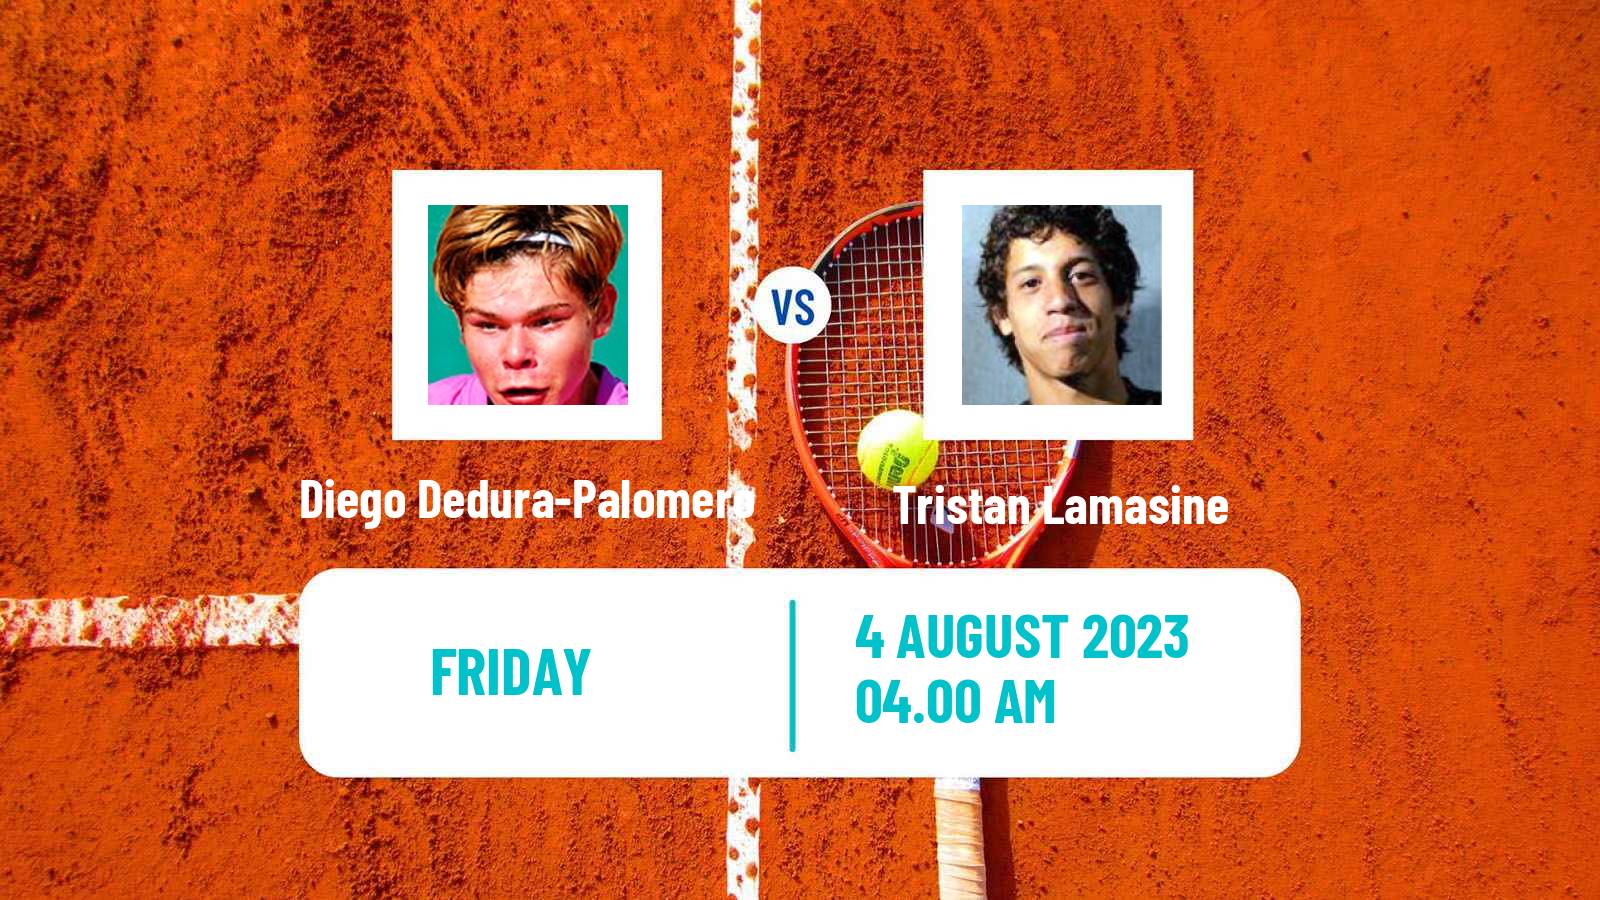 Tennis ITF M25 Wetzlar Men Diego Dedura-Palomero - Tristan Lamasine